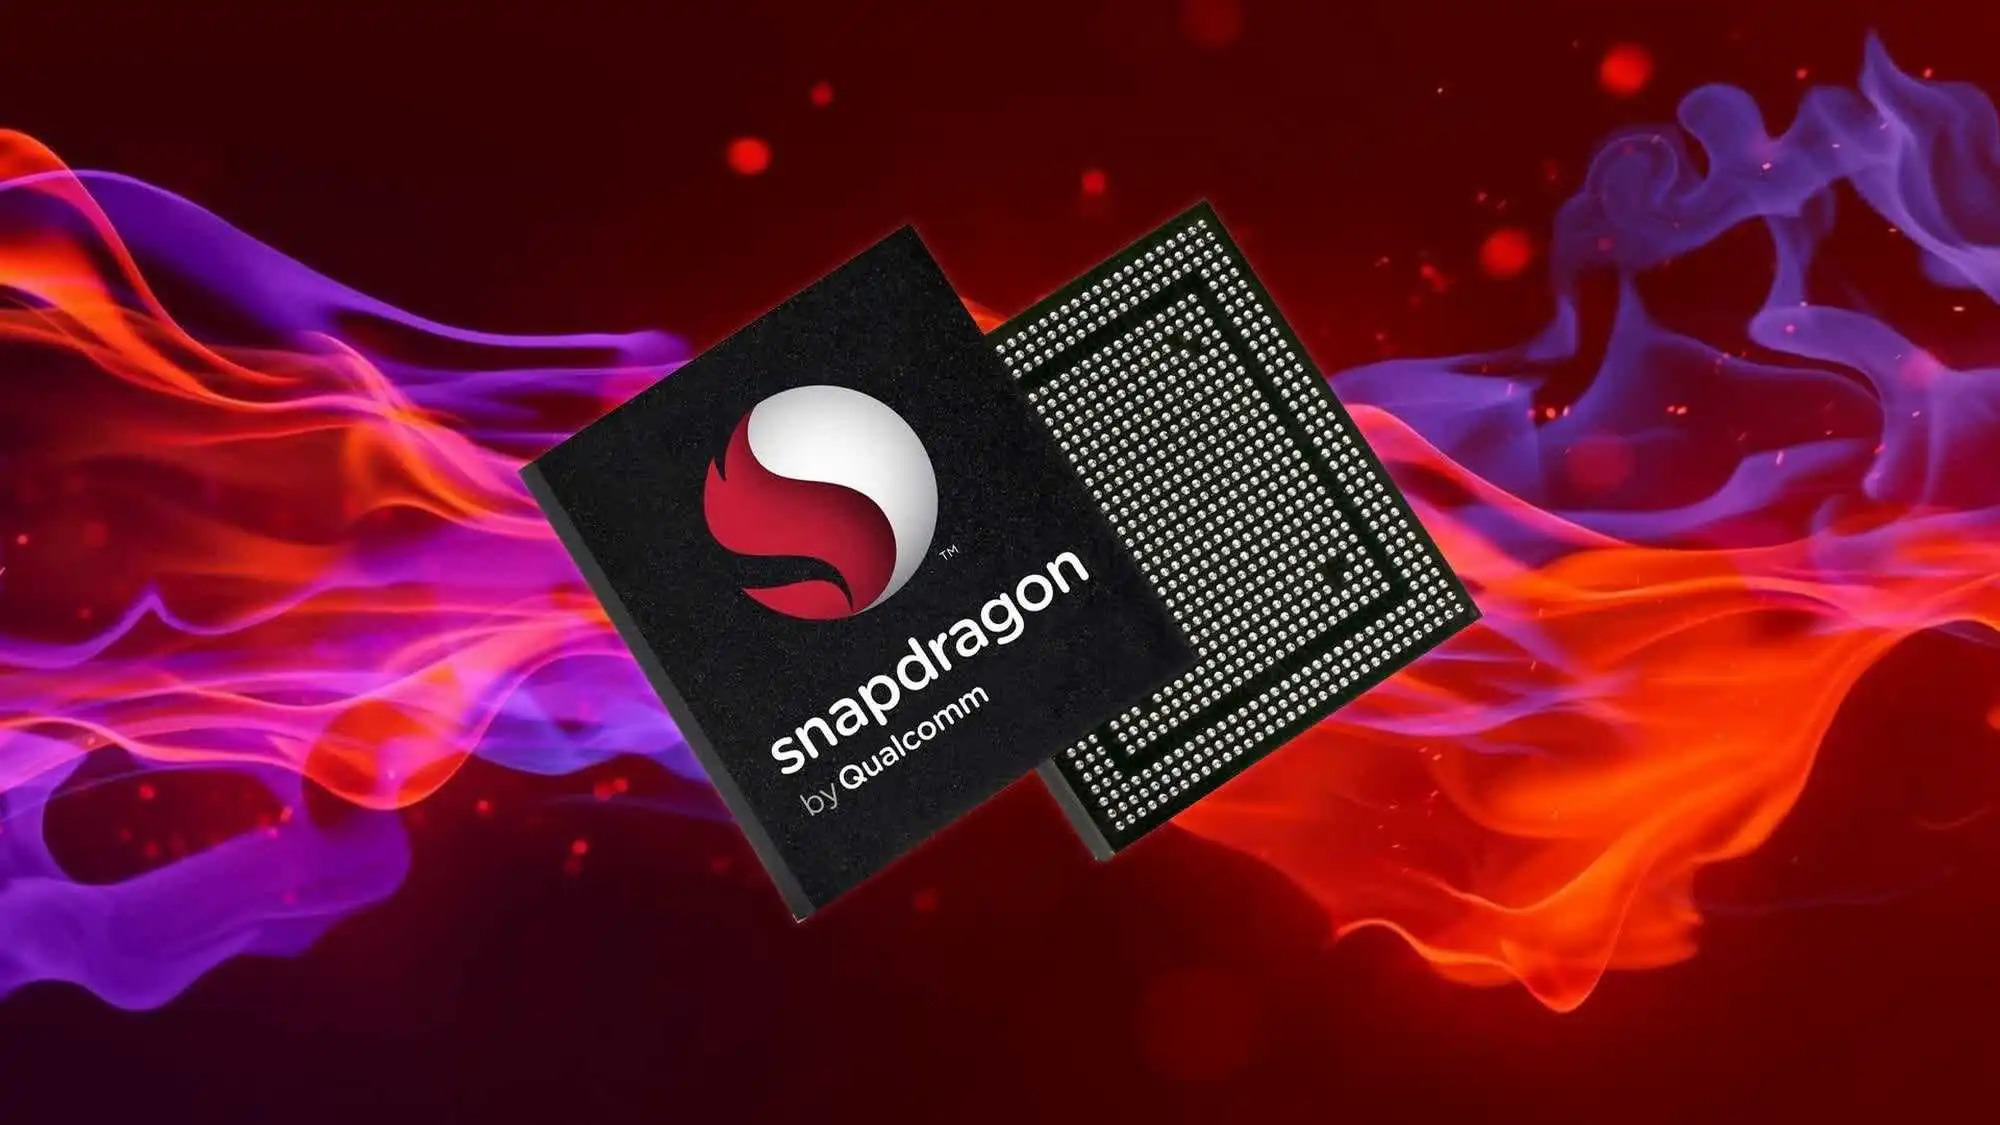 EXCLUSIVE: Here is Qualcomm's new Snapdragon 8 Gen 3 (Full Specs) -  MSPoweruser